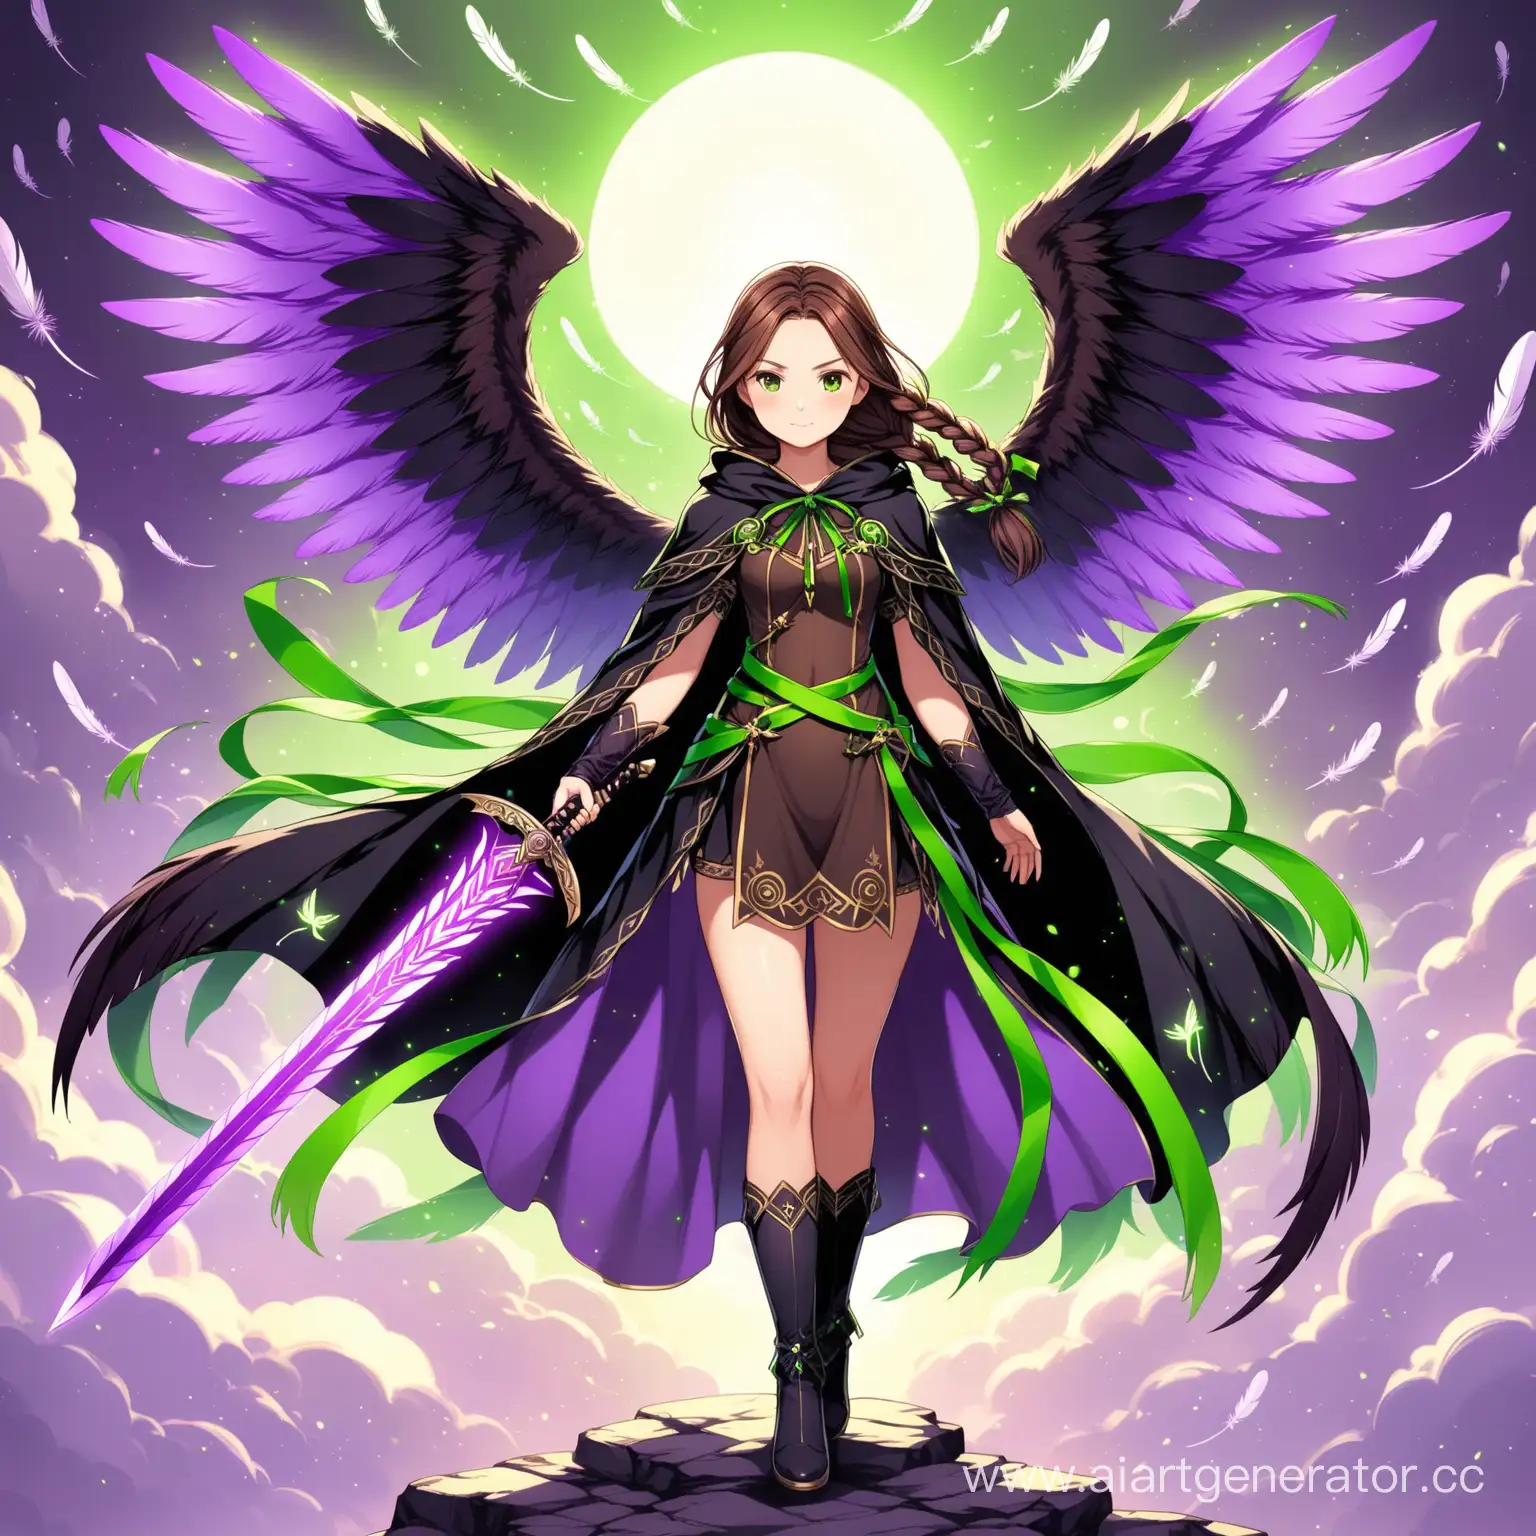 девушка с коричневыми заплетёнными в один хвост волосами с зелёными и фиолетовыми ленточками в зеленой фиолетовой или чёрной мантии с крыльями в лаймовом фиолетовом и чёрном цветах с перьями и с мечом